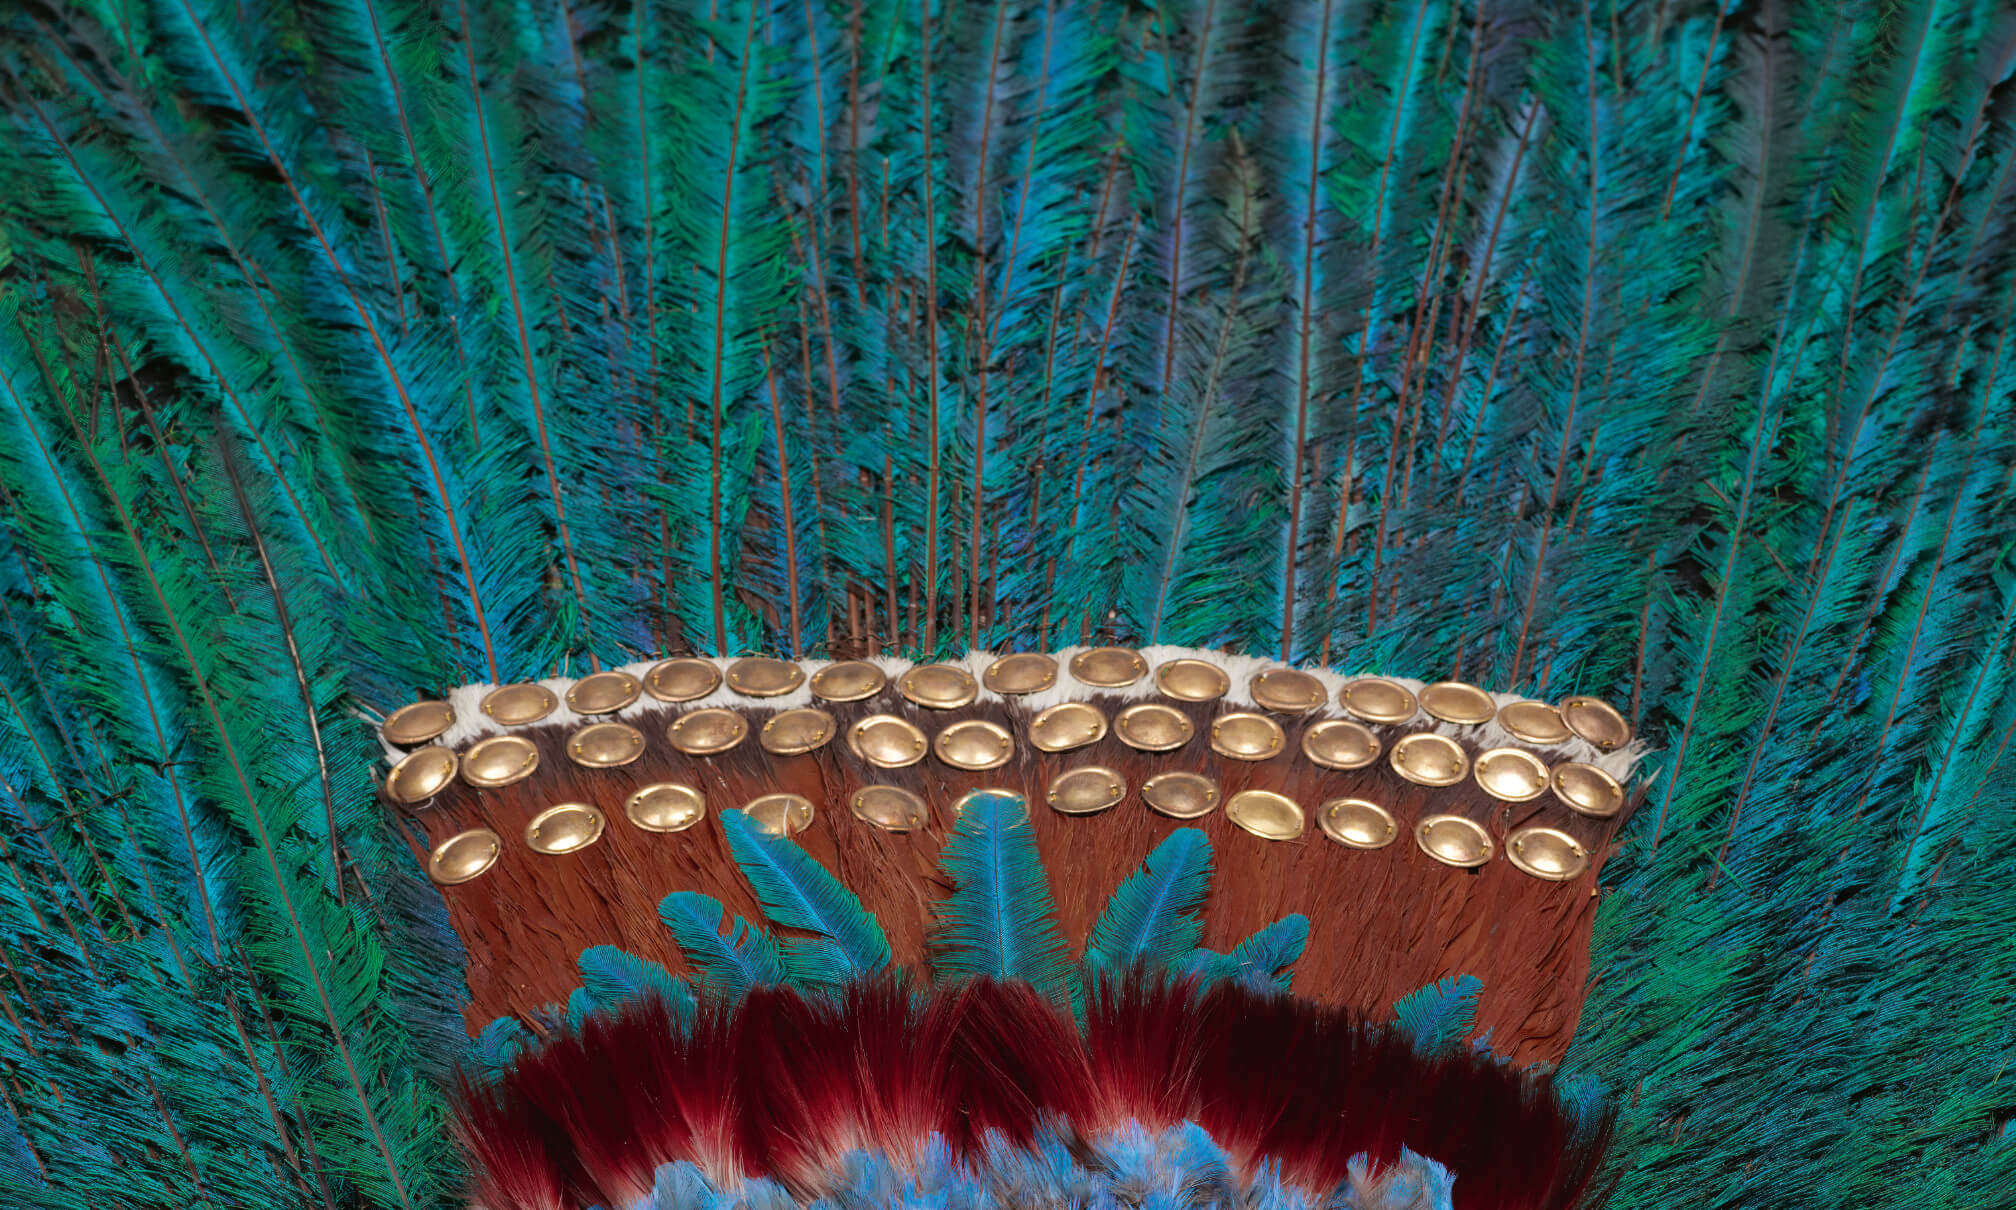 Detailaufnahme des Penachos mit roten und grün-blauen Federn